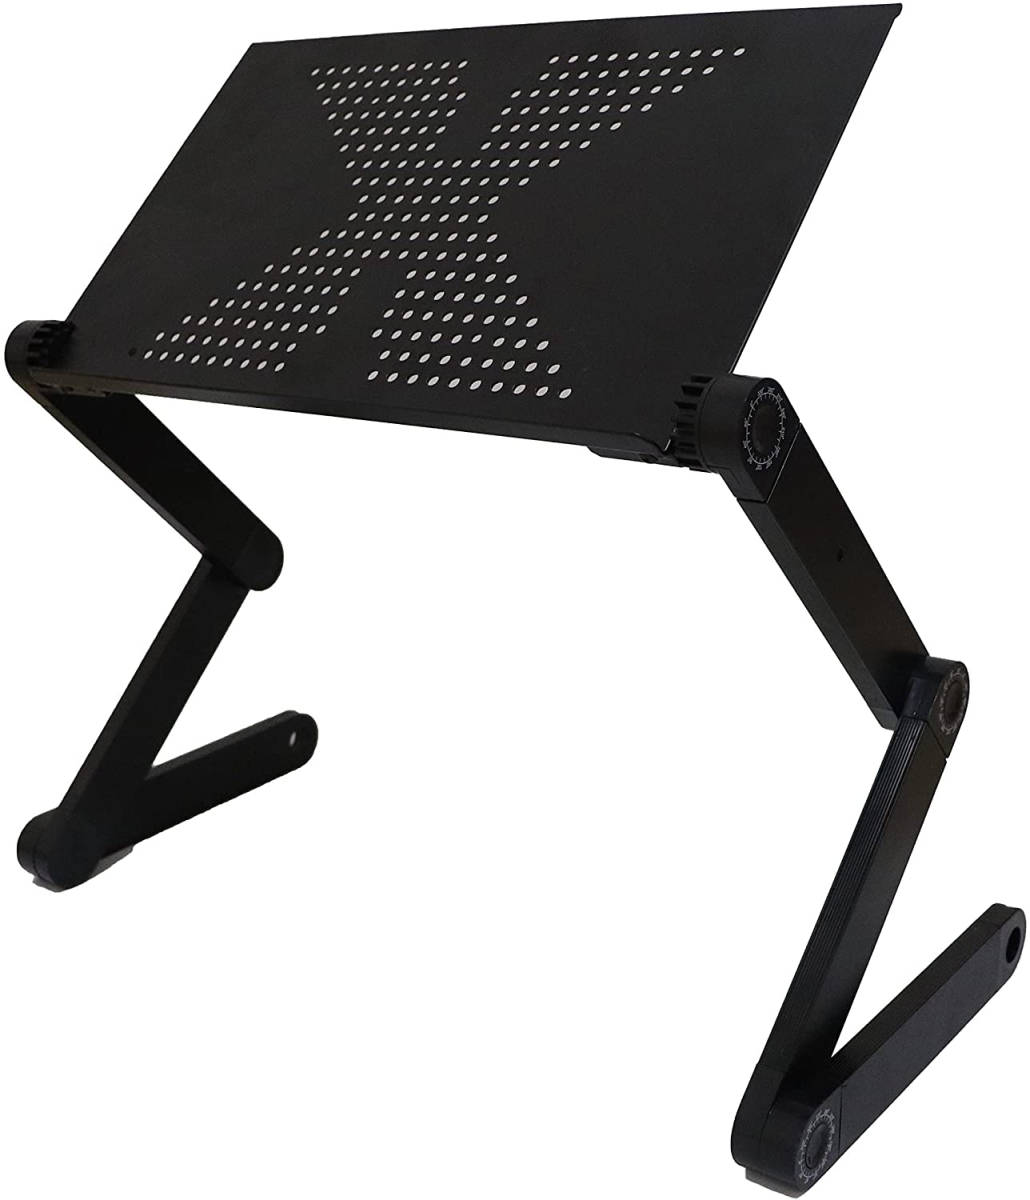  подставка для персонального компьютера складной подставка для ноутбук 360 раз настройка возможность ( aluminium | угол высота нет -ступенчатый регулировка ) боковой стол 